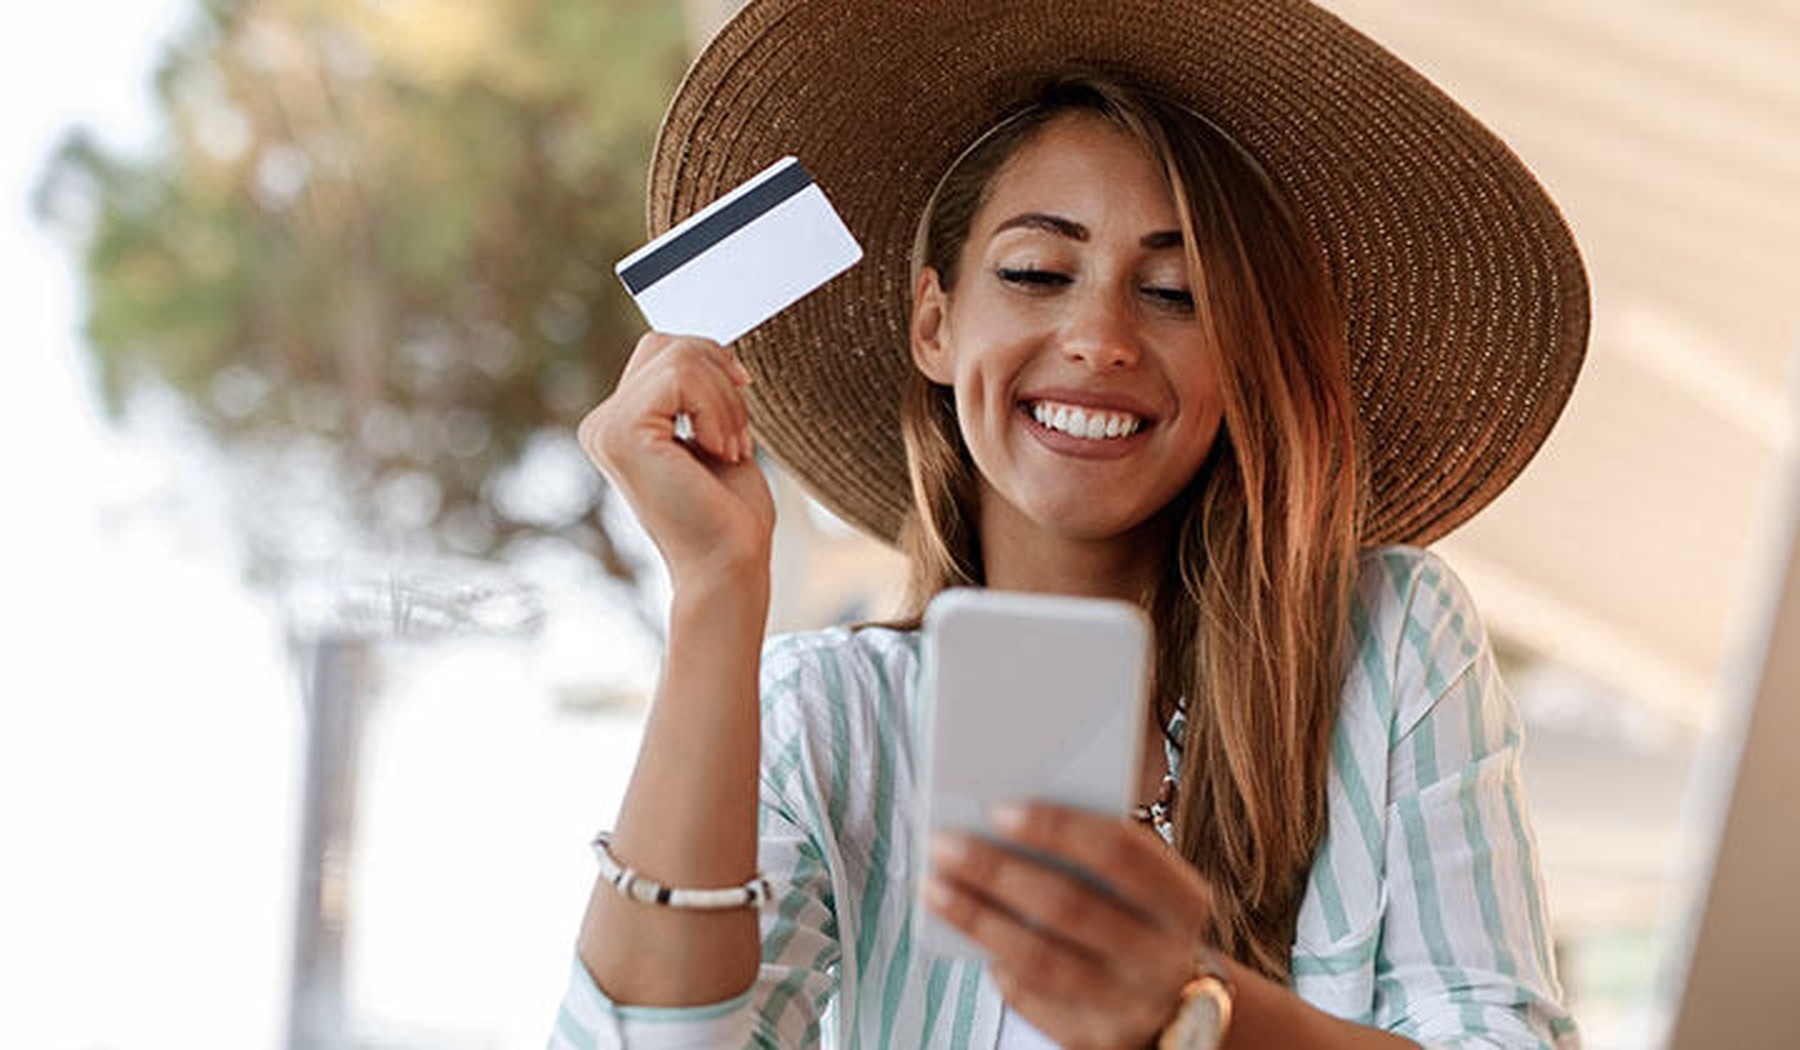 Een vrouw in een zomerse outfit houdt haar telefoon vast in de ene hand en haar bankkaart in de andere